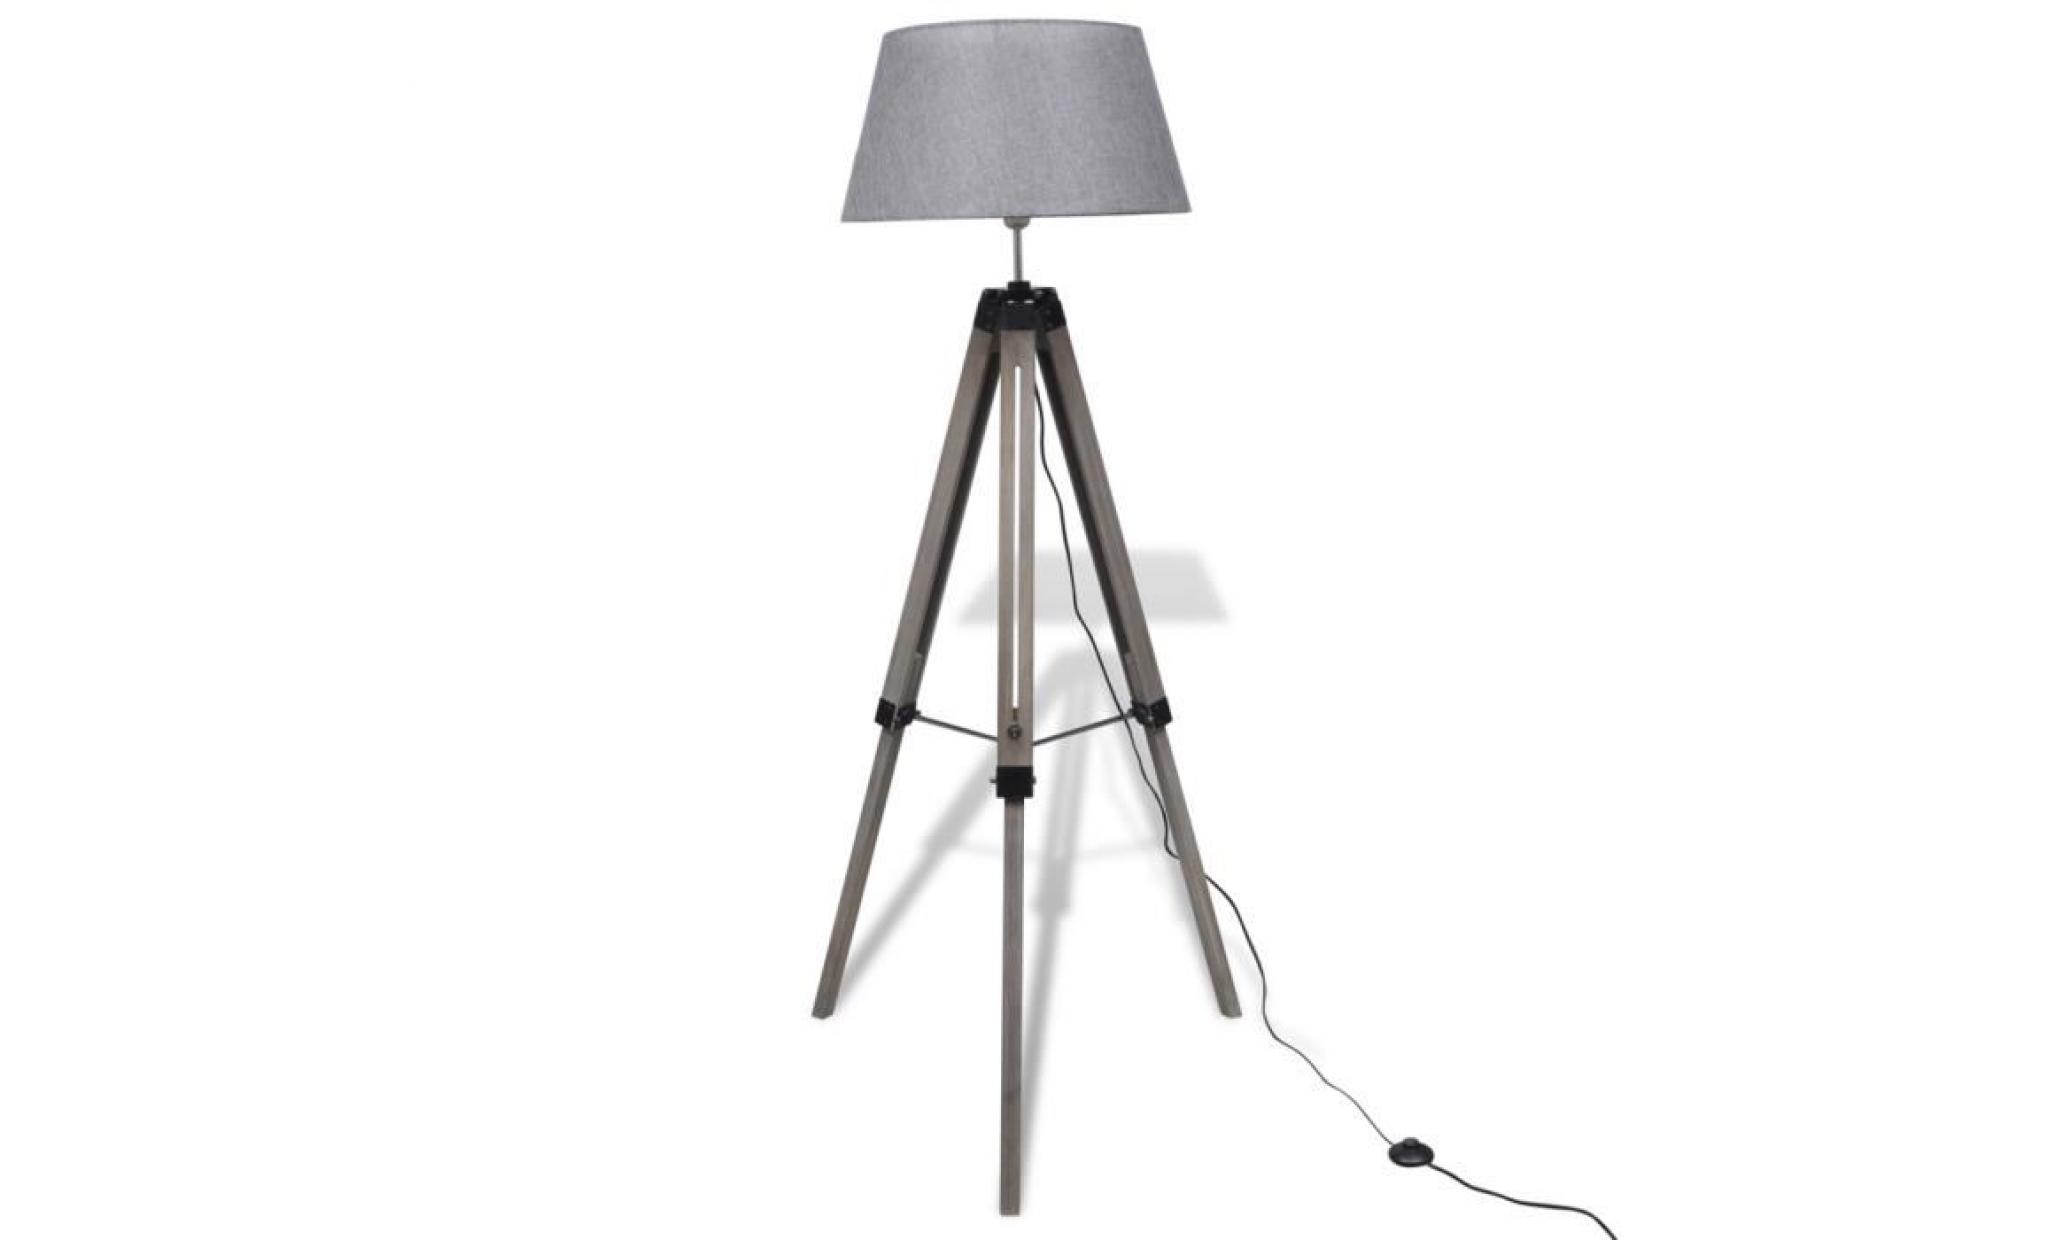 lampadaire à trépied en bois réglable avec abat jour en tissu gris design industriel moderne pas cher